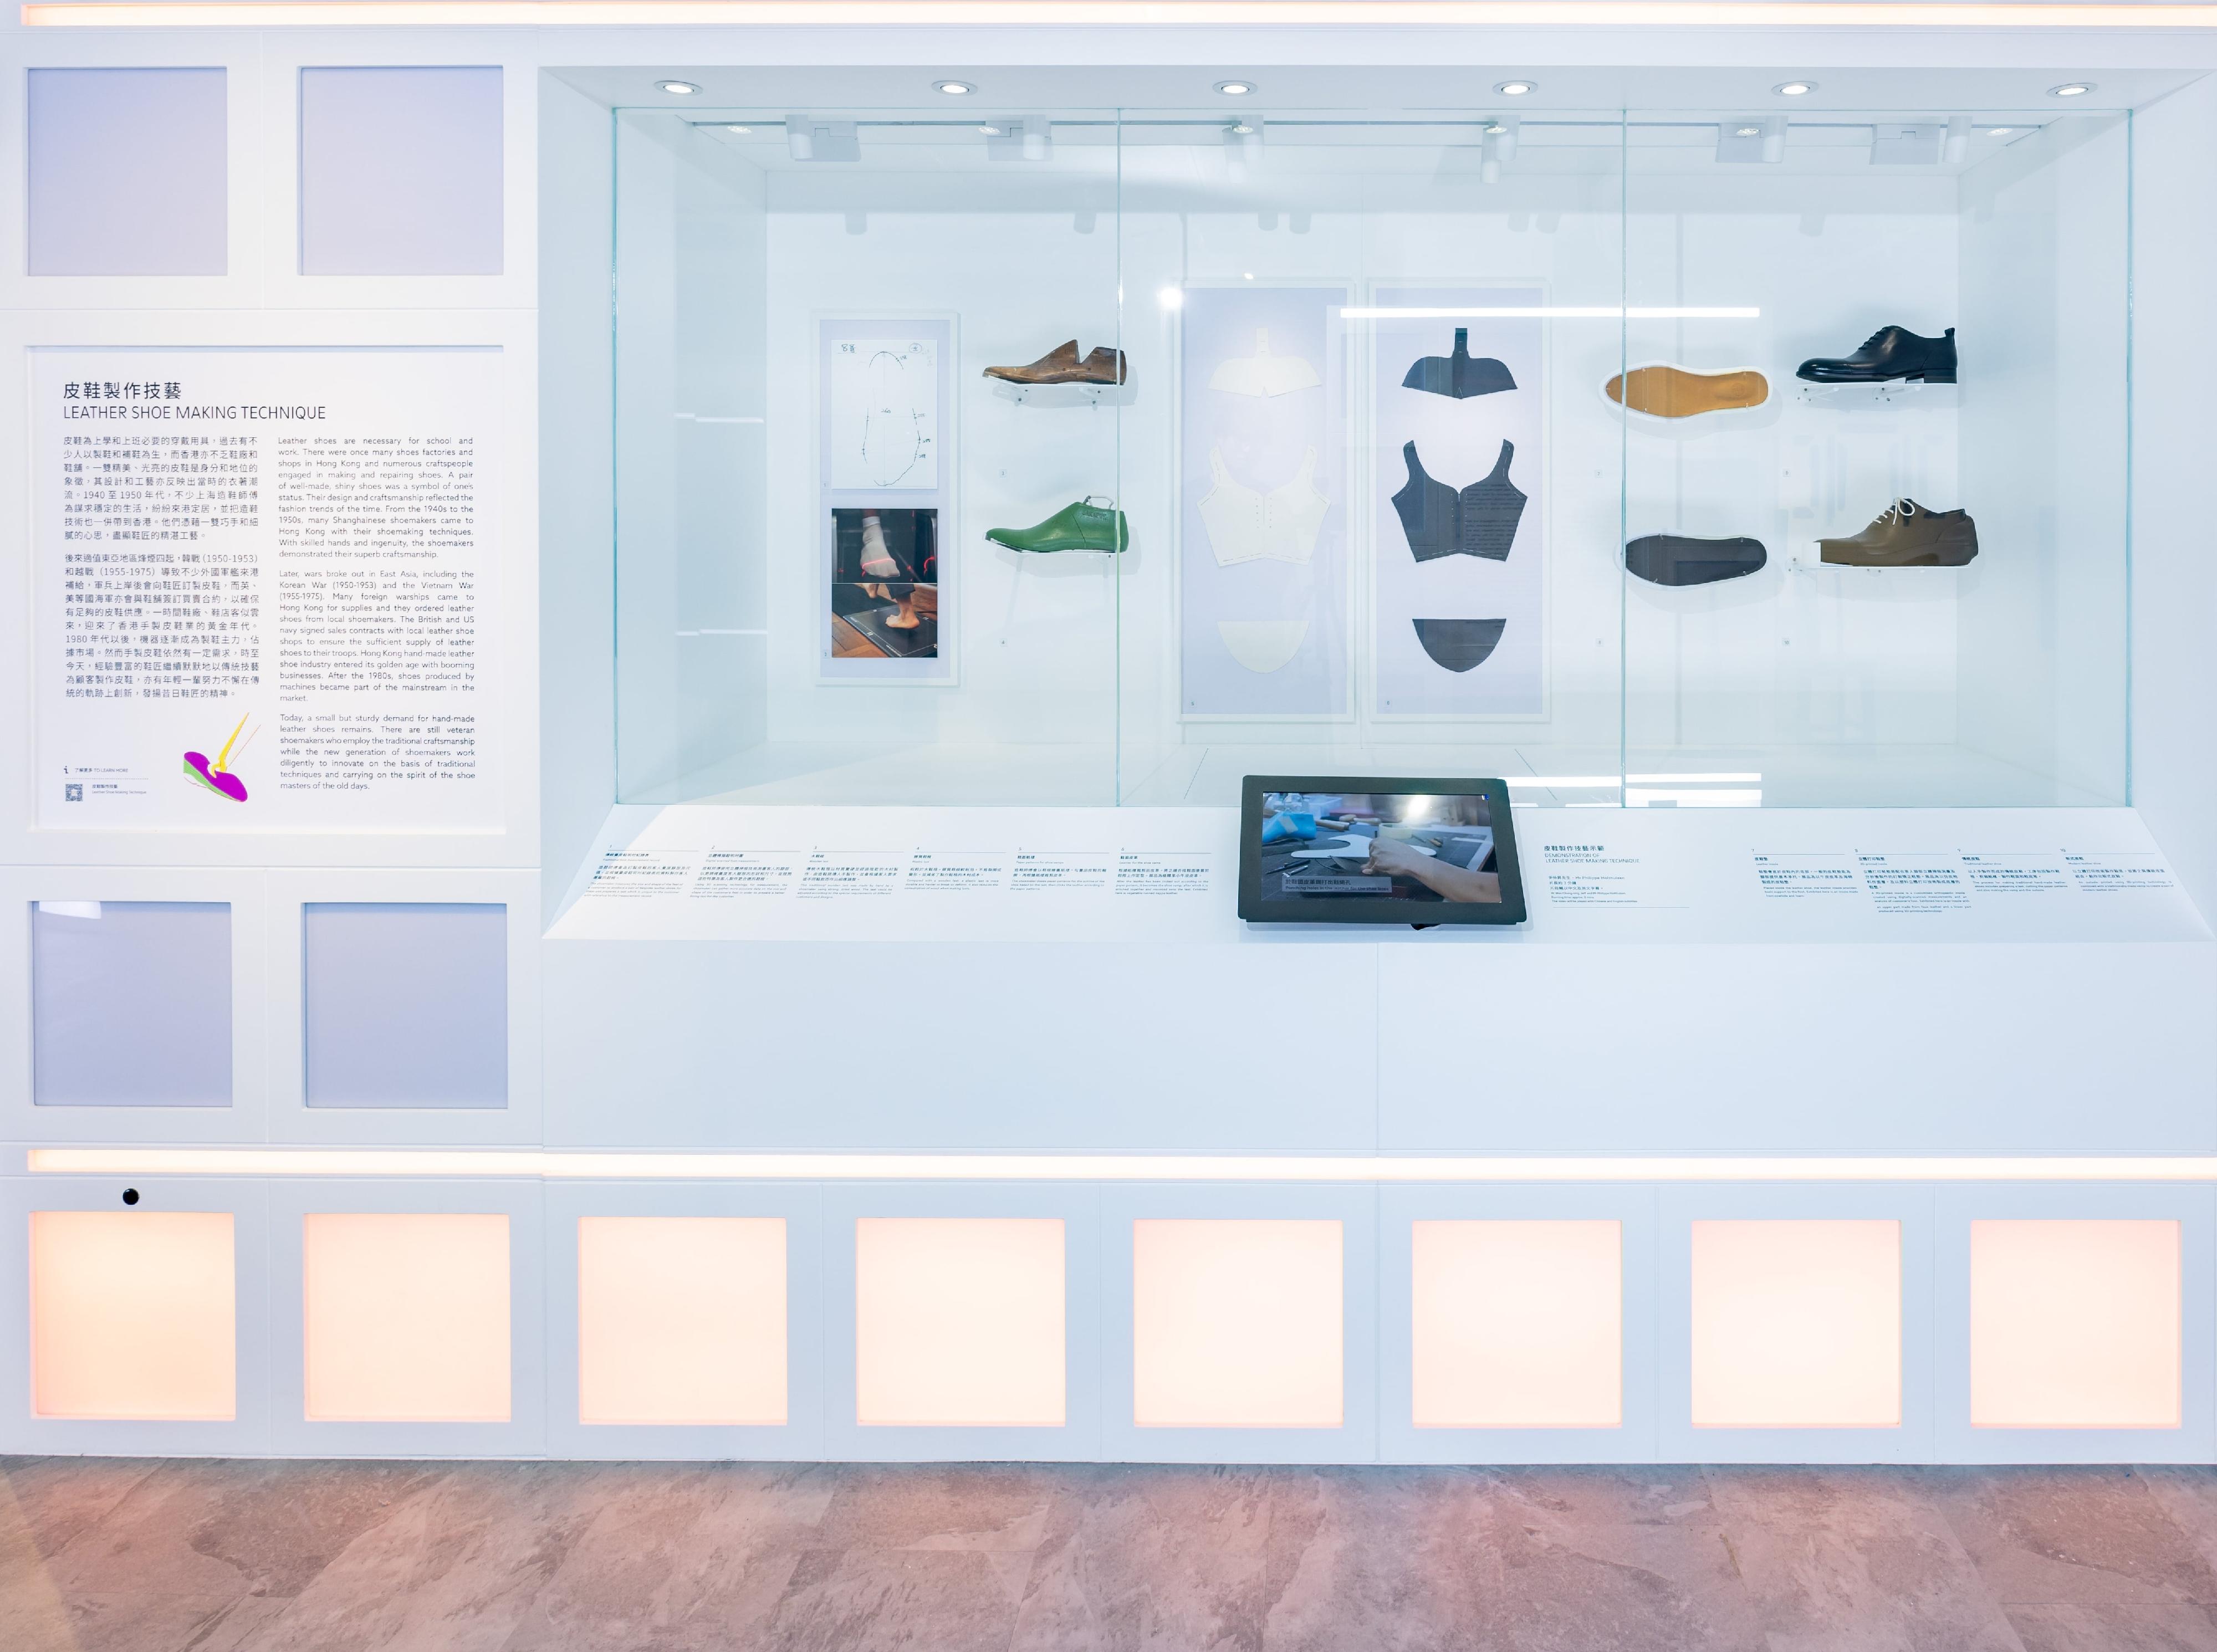 非物质文化遗产办事处策划的新展览「人为．非遗」，明日（五月十九日）起开放予市民参观。图示非物质文化遗产项目皮鞋制作技艺的展品。